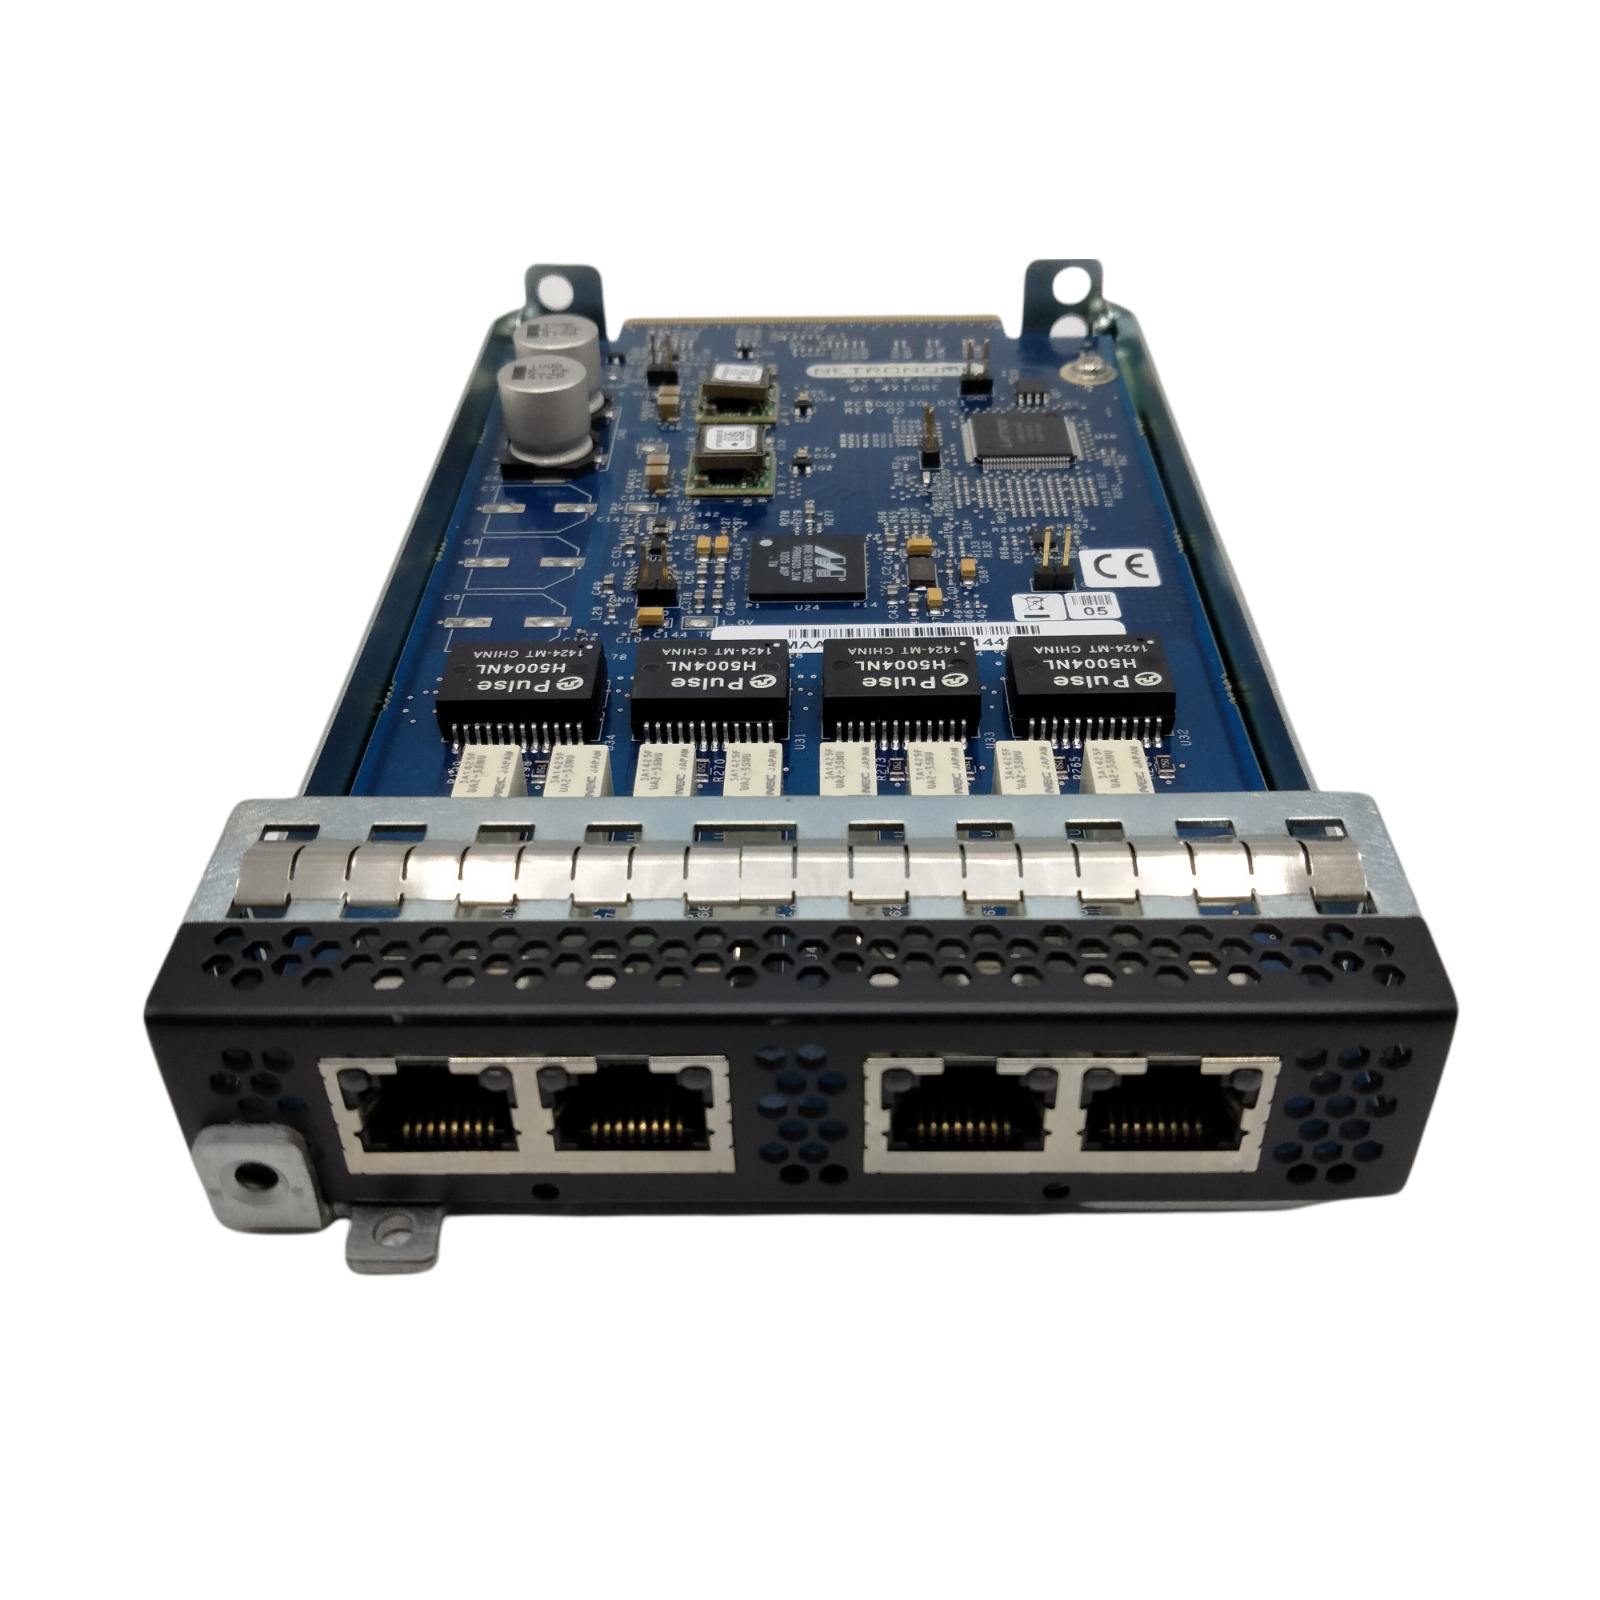 Cisco Sourcefire Module - GC 4X1GBE - Netronome - PCBD0030-001 Rev 2.0